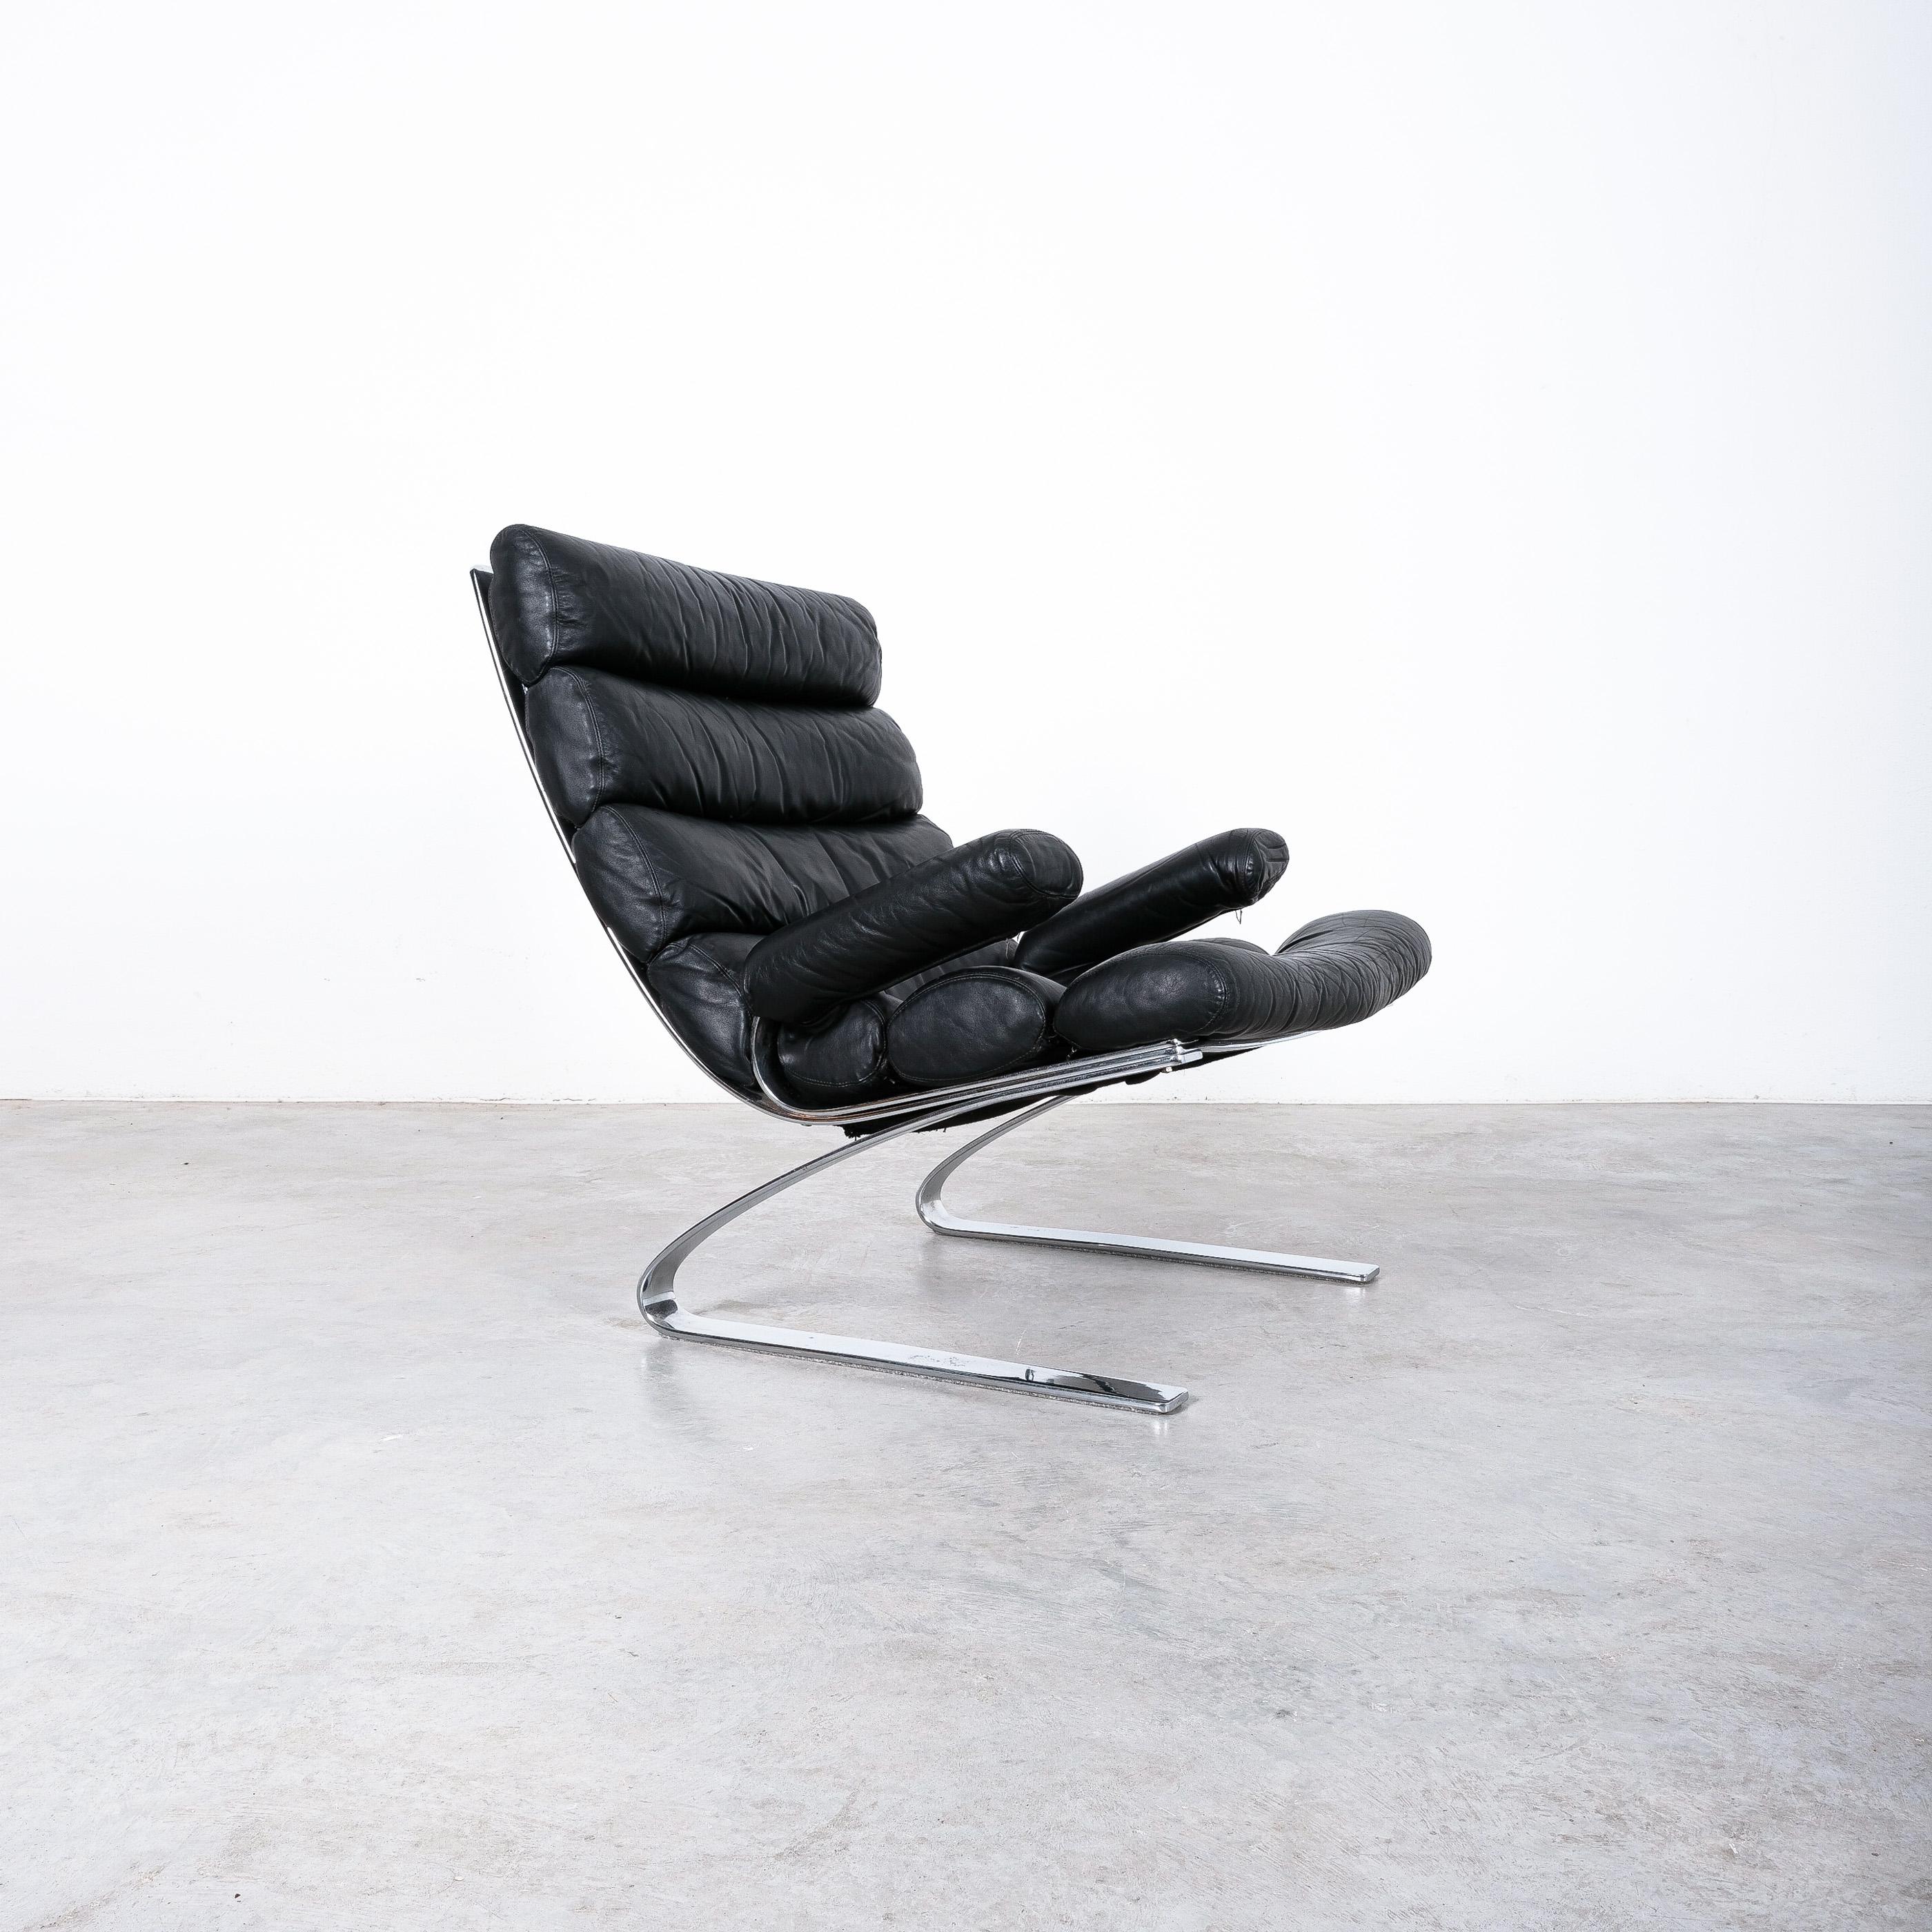 Fauteuil de salon 'Sinus' de Reinhold Adolf & Hans-Jürgen Schröpfer pour COR, Allemagne 1976.

Chaise Sinus originale avec son cuir lisse et intact d'origine. La chaise Steele doit son nom à l'esthétique formelle des bascules à ressort en acier.